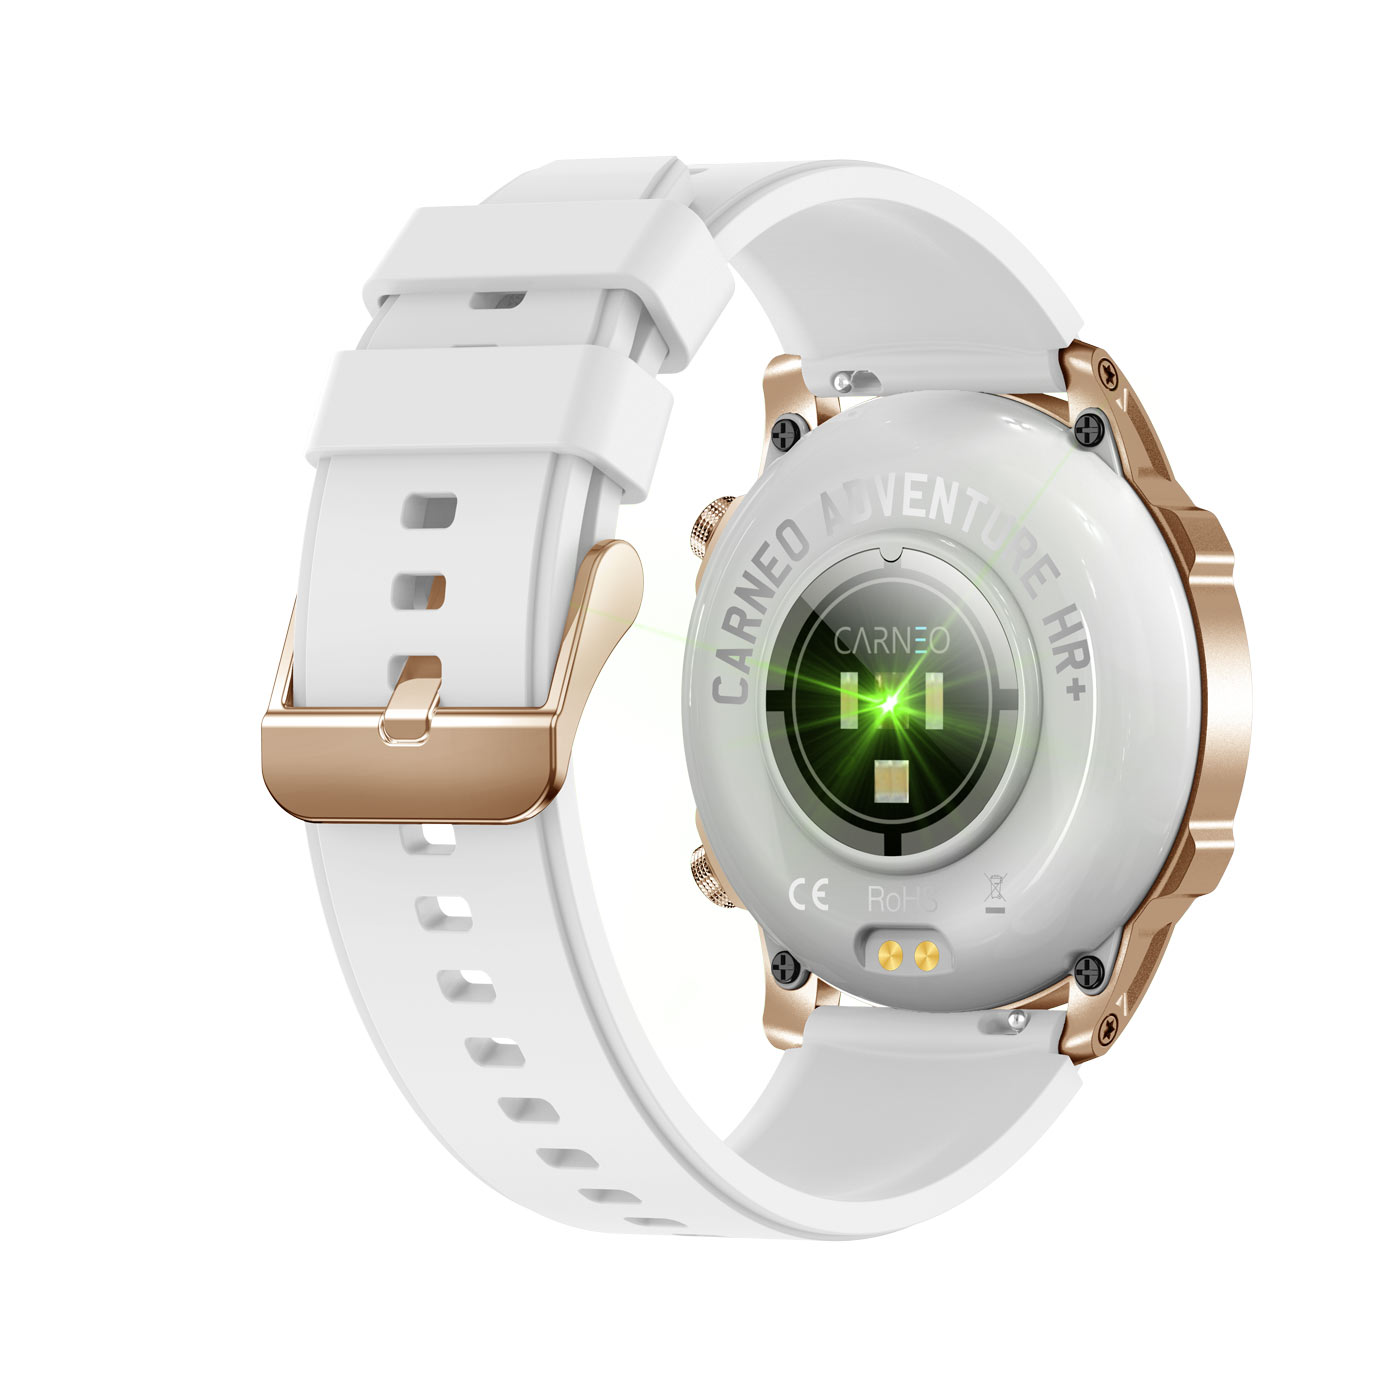 Smartwatch, Adventure HR+ gold CARNEO gold,